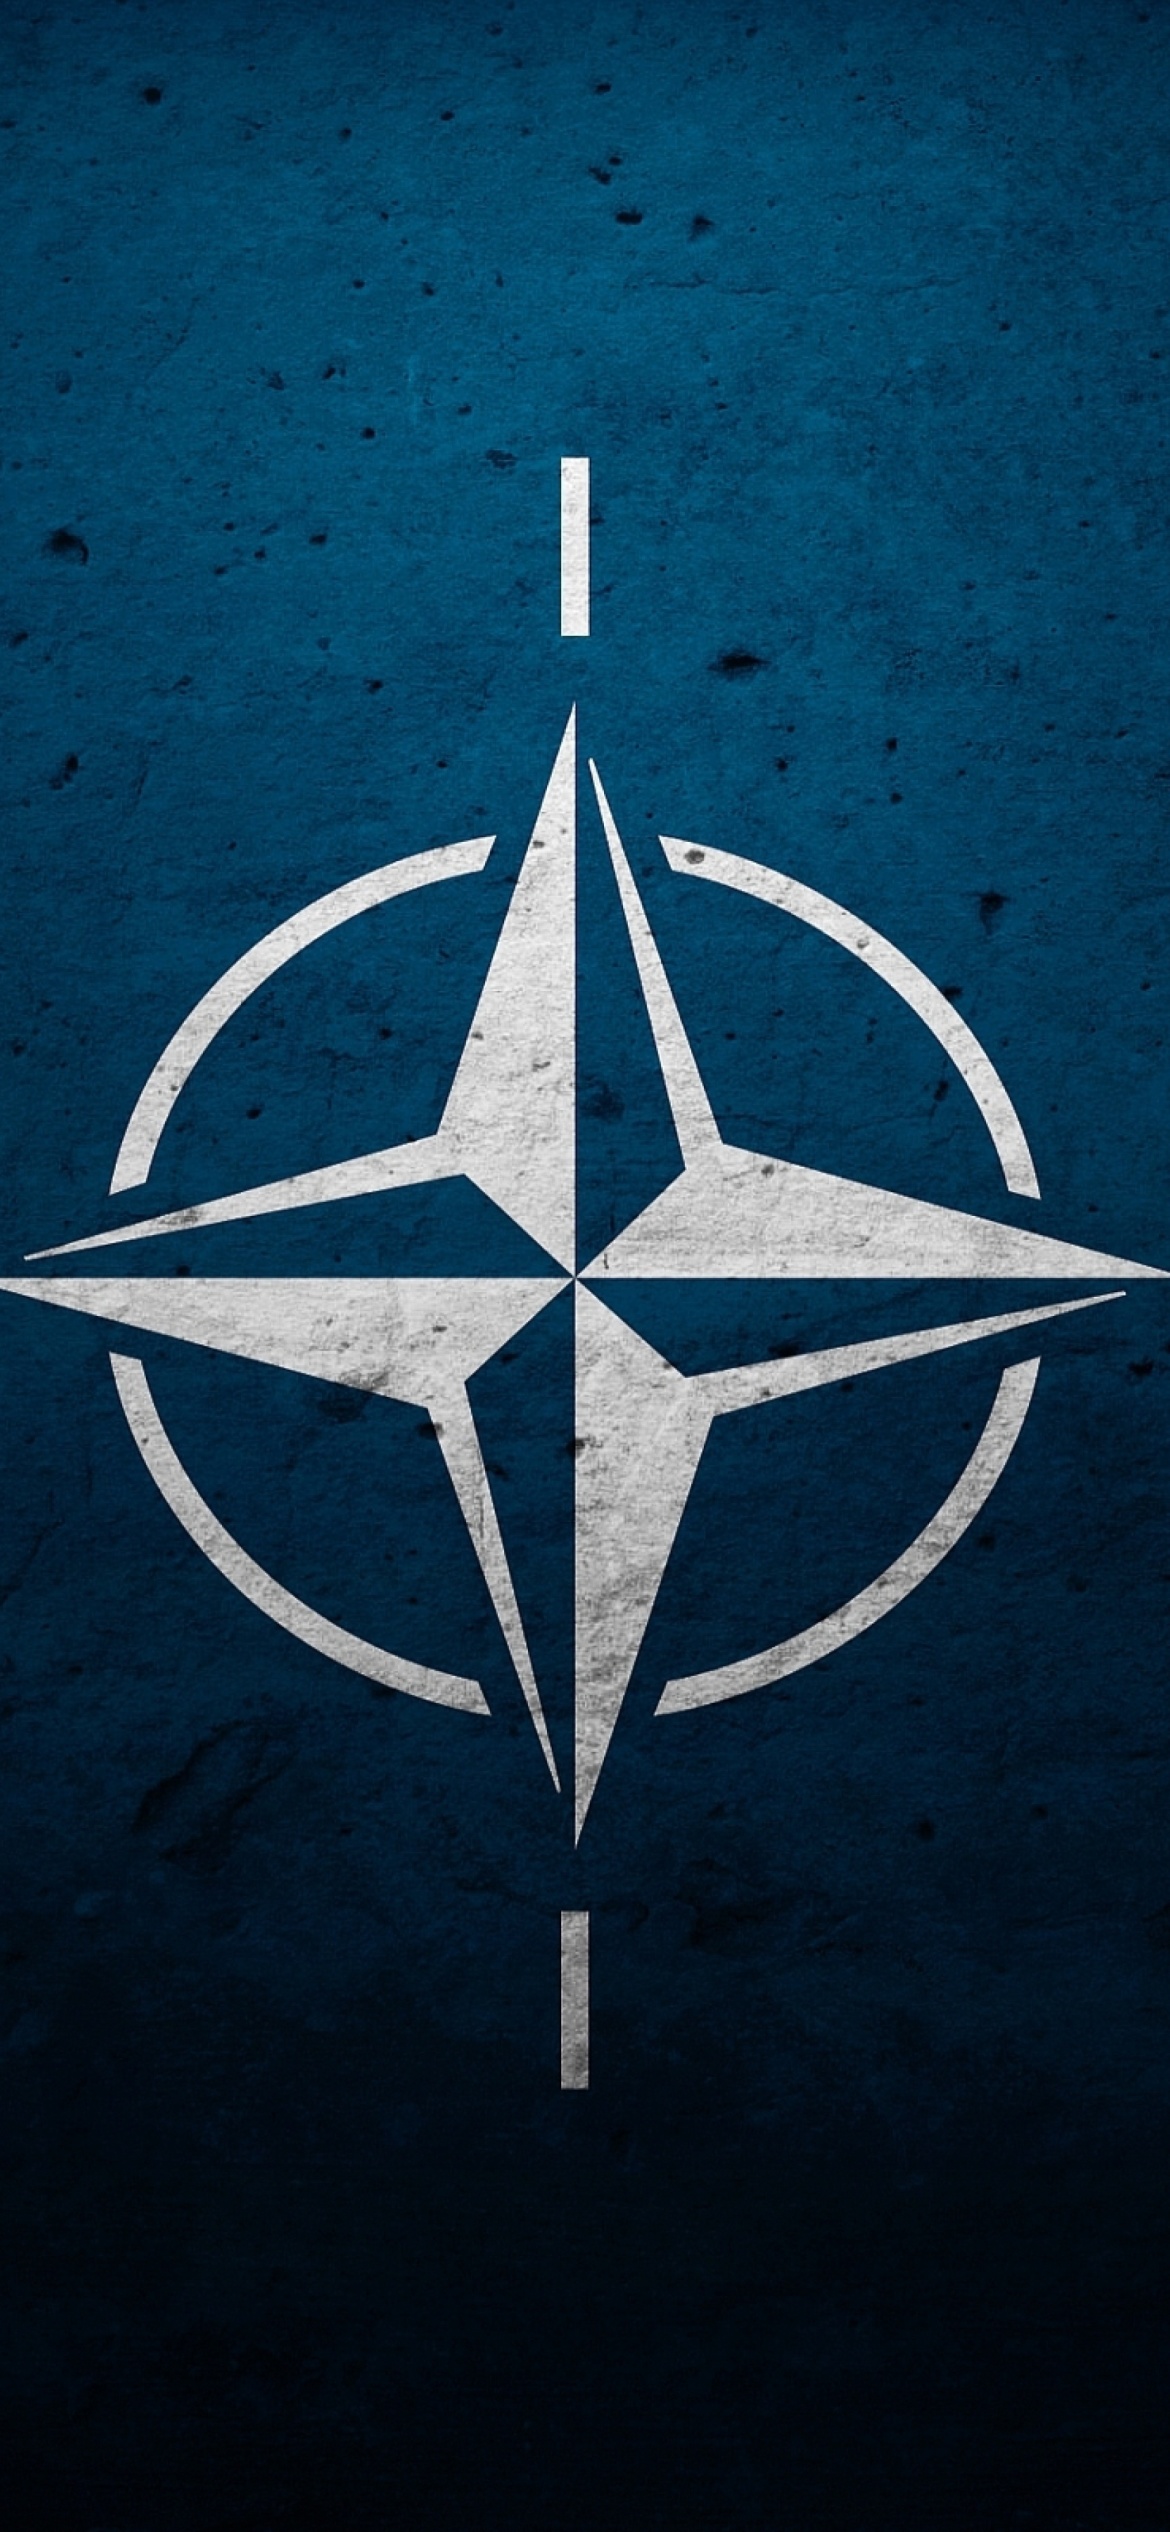 Flag of NATO wallpaper 1170x2532